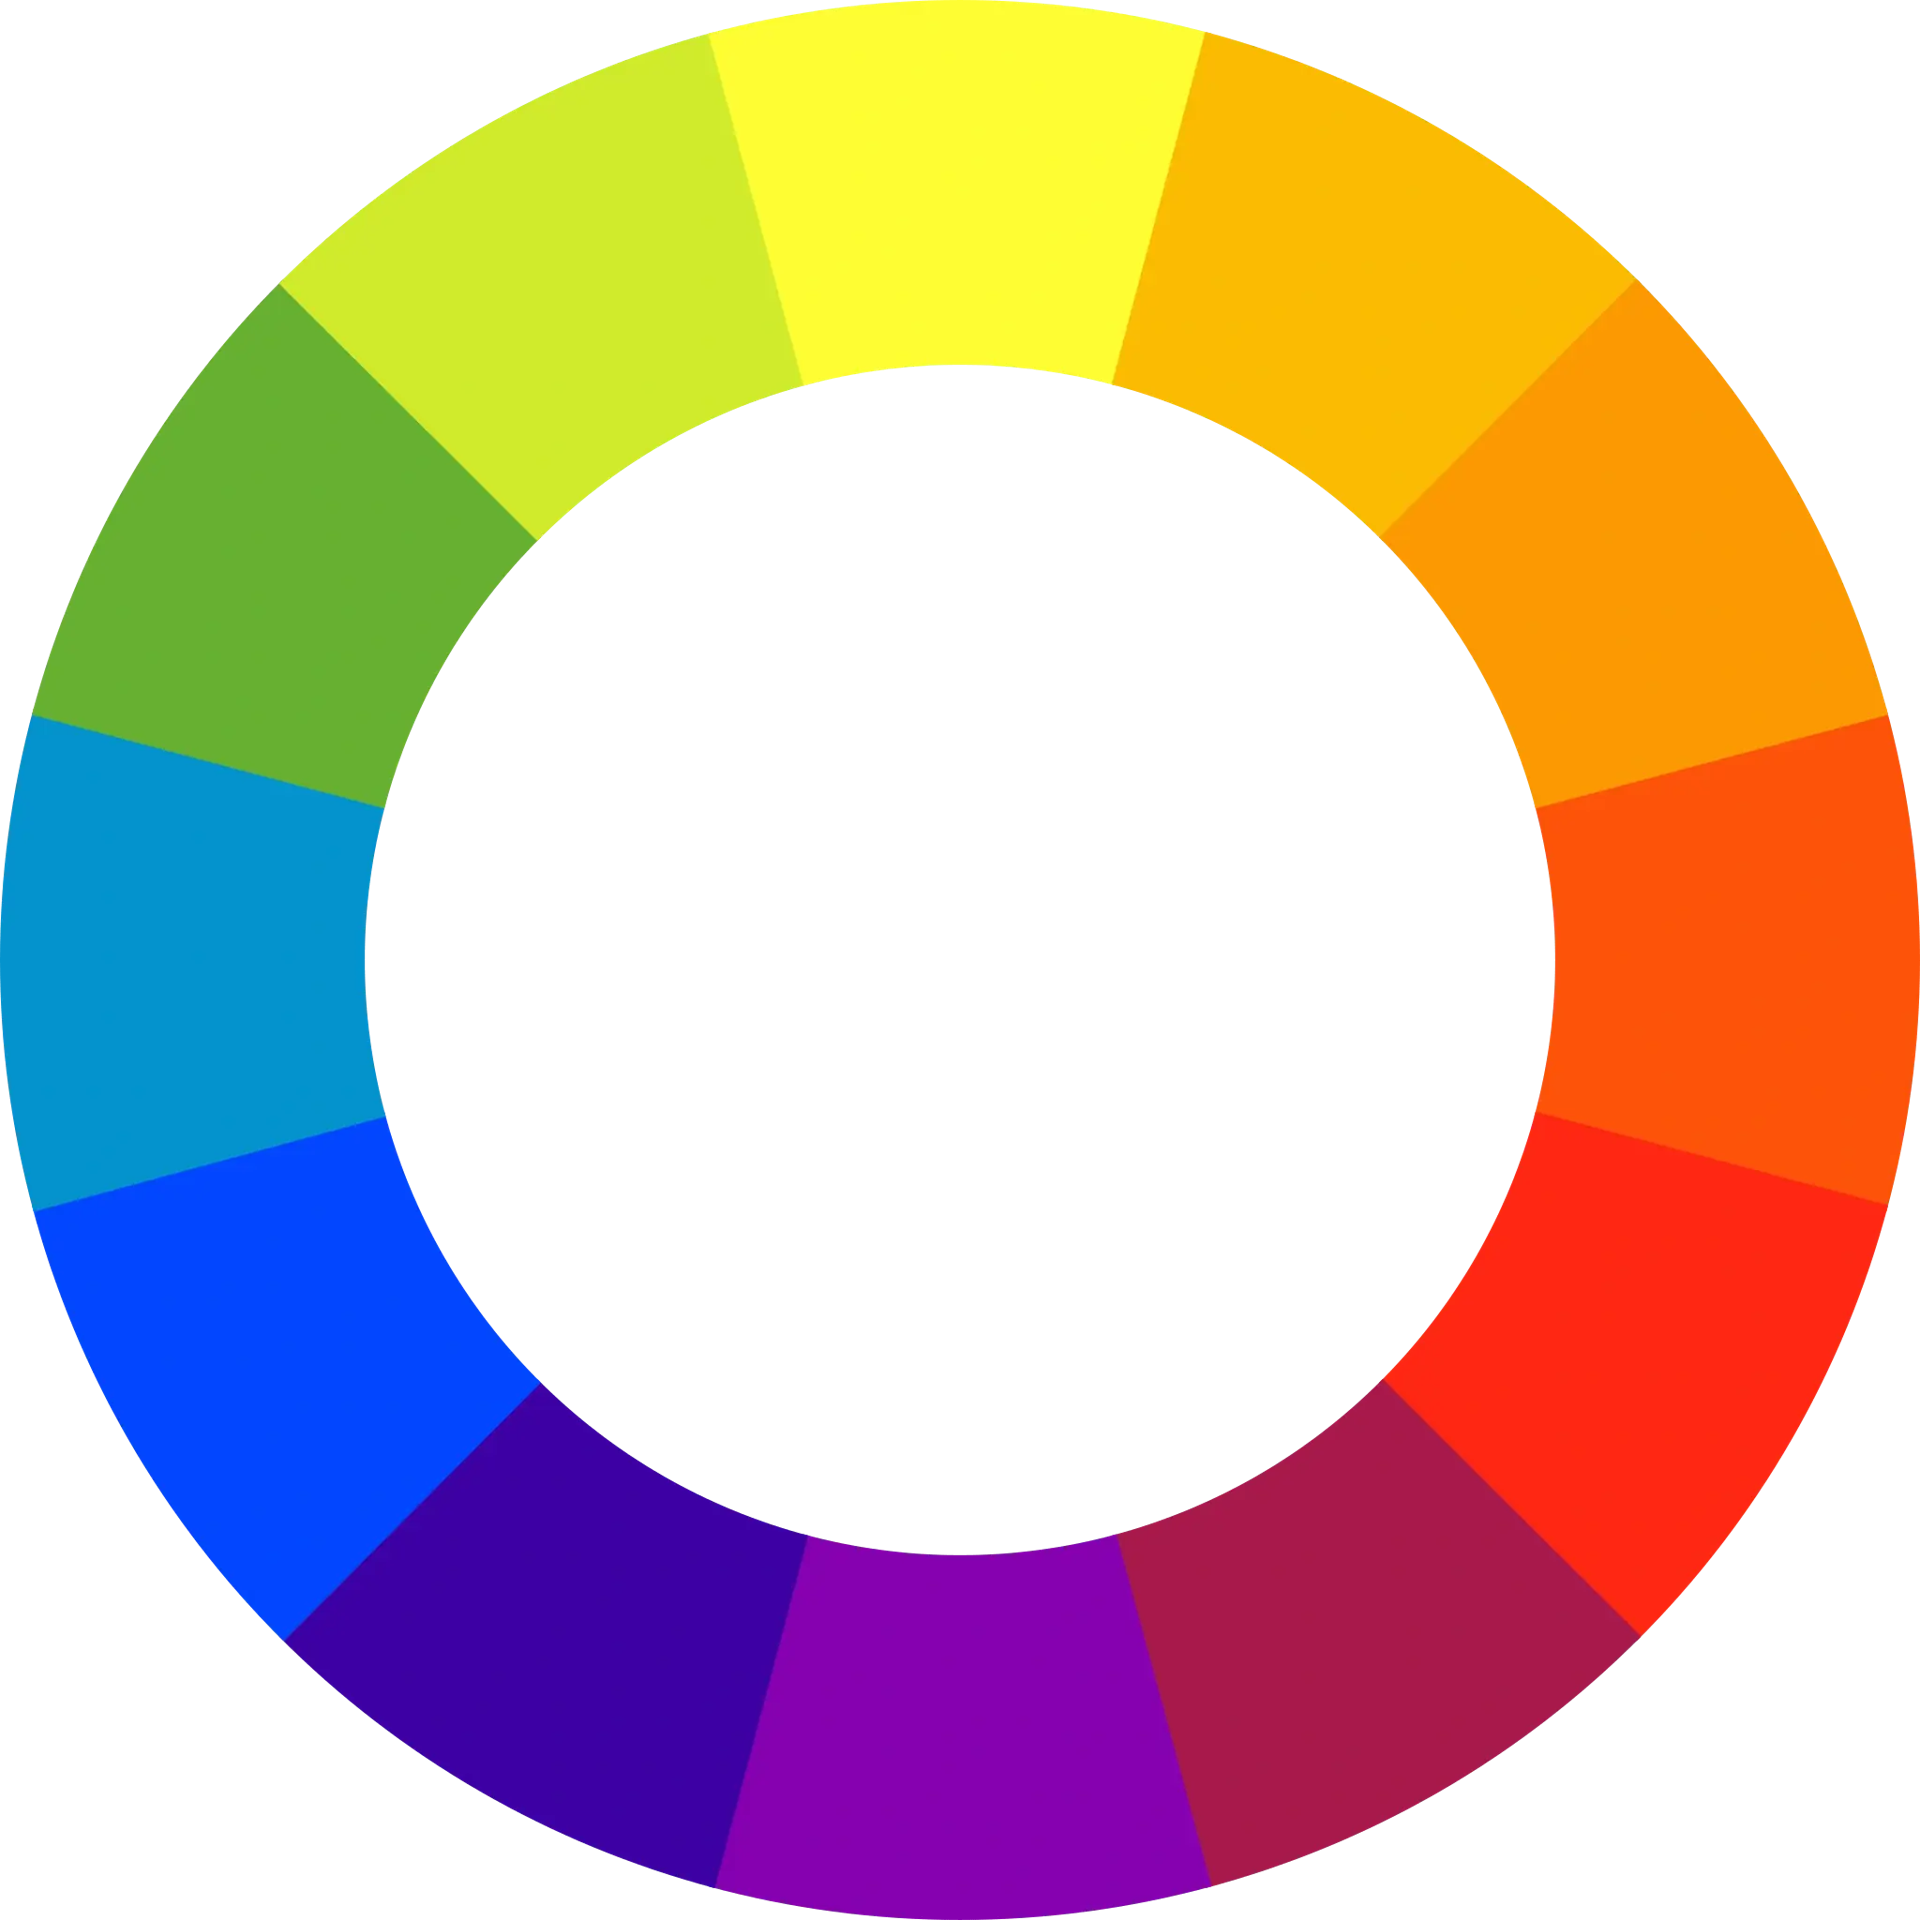 Reine Farbtöne sind außen im Farbkreis sichtbar